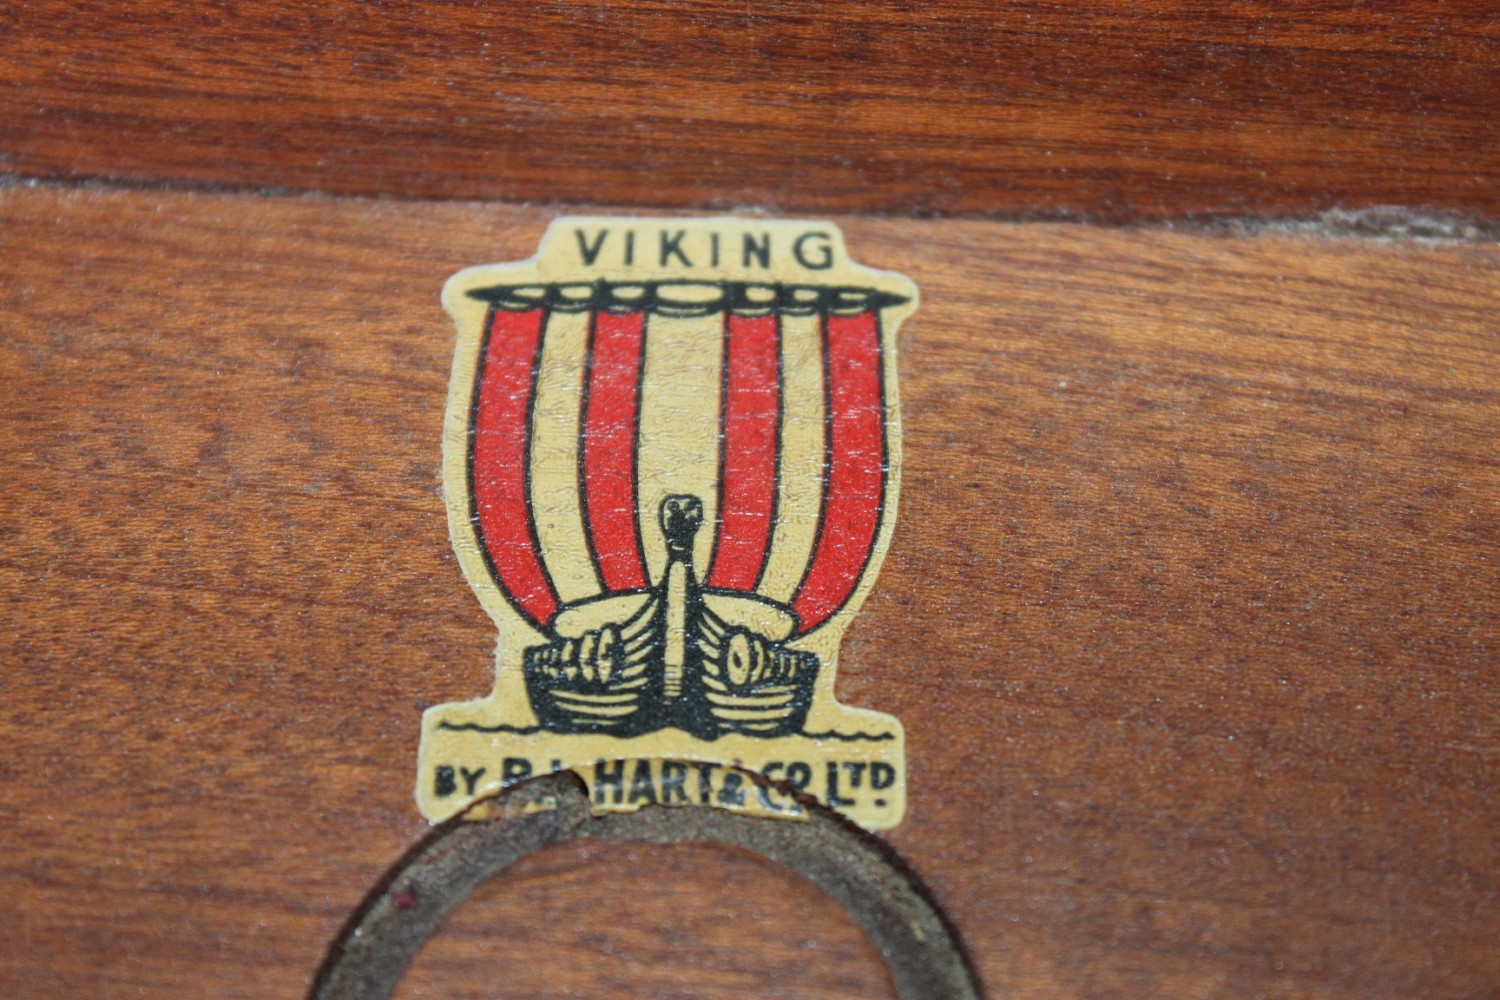 Viking Arm Chair